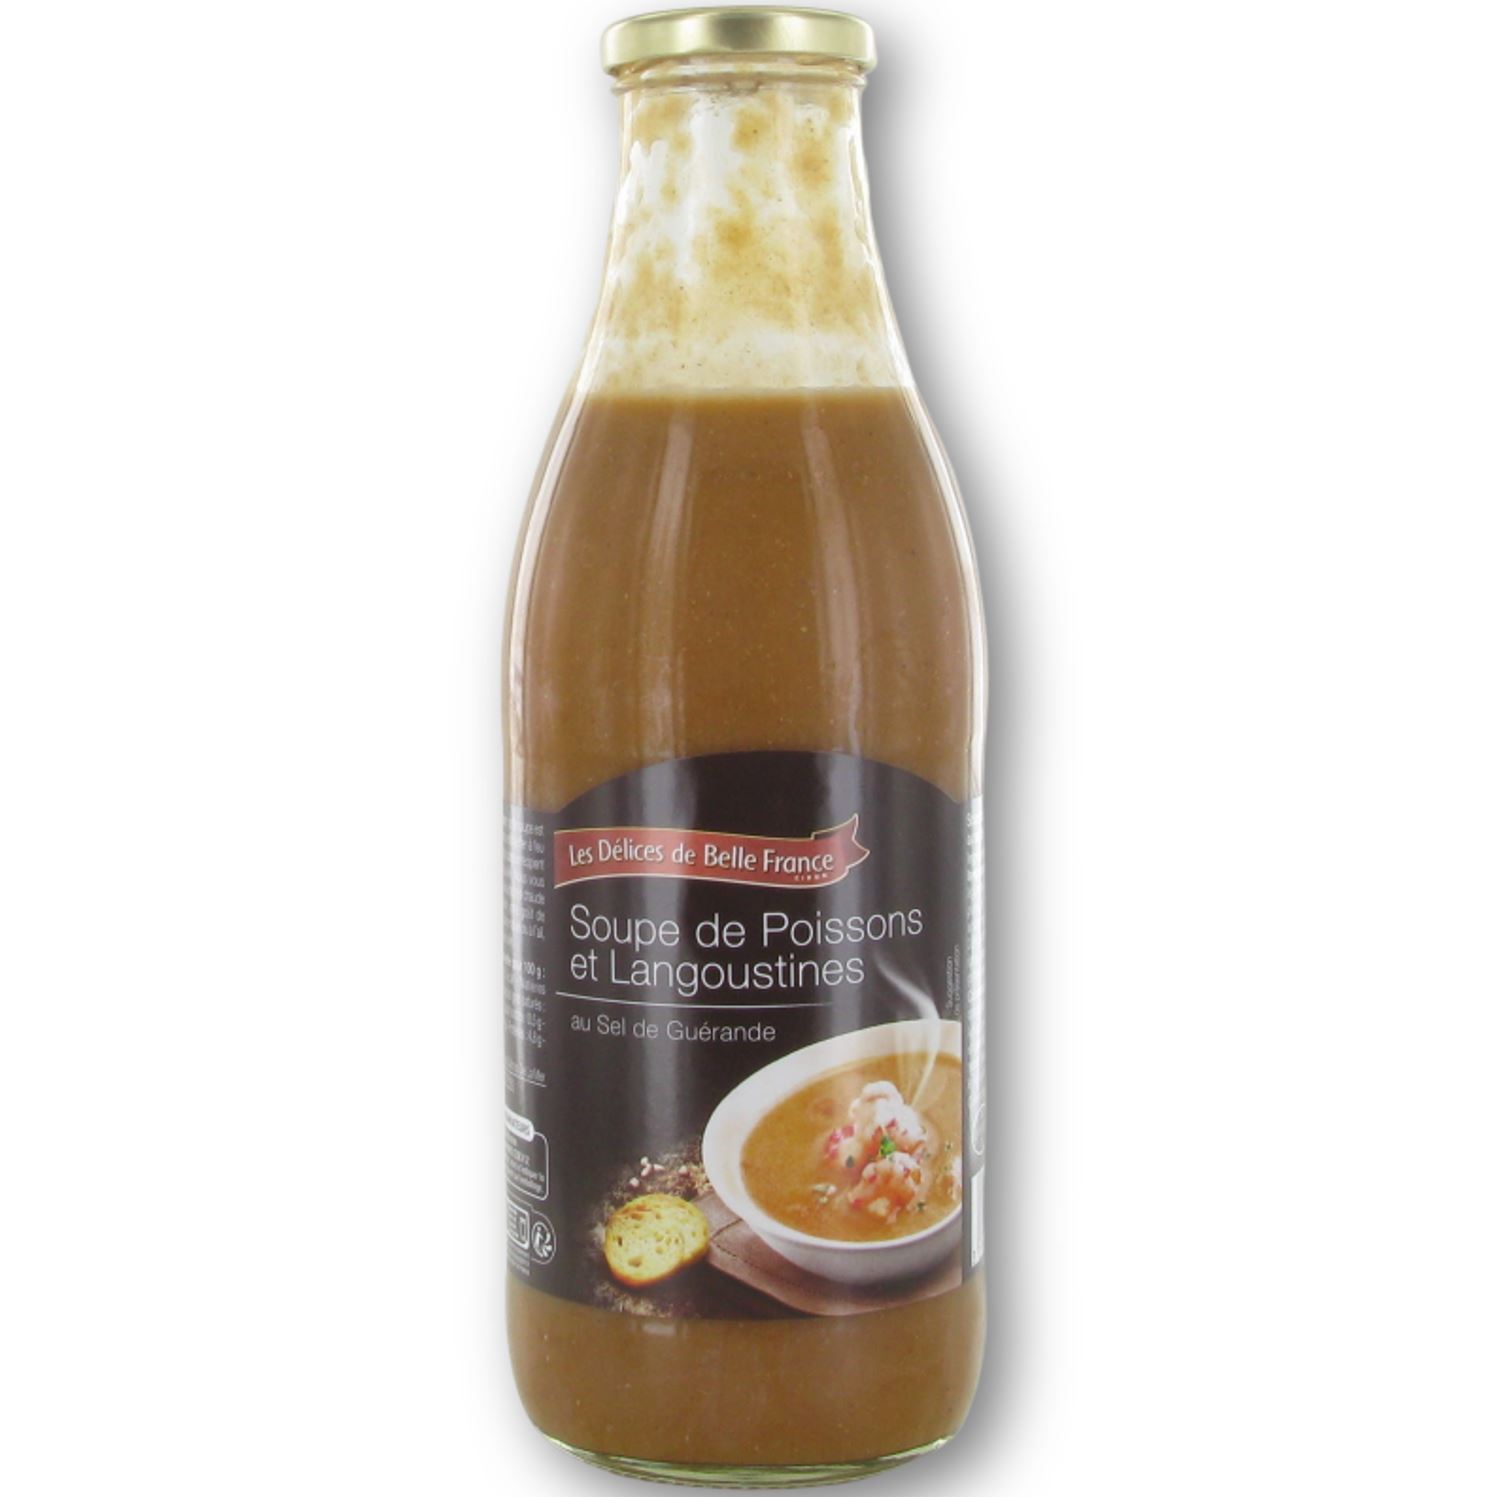 Soupe à la marocaine (Royco, 3 x 20cl)